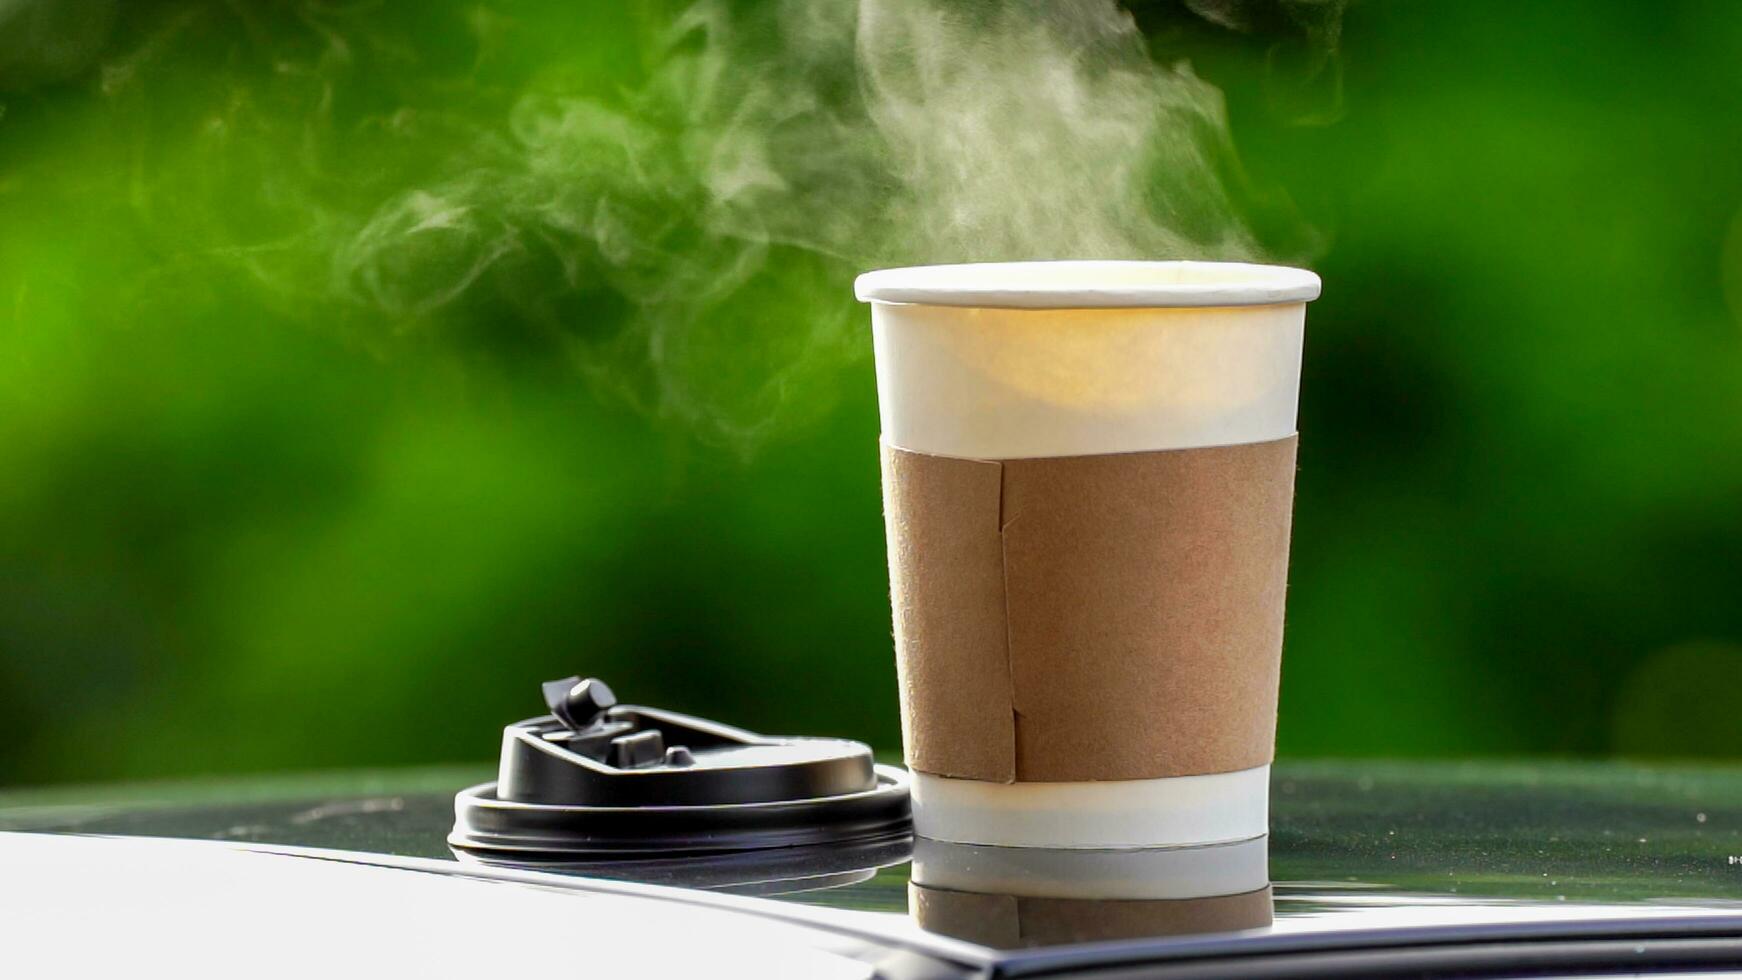 koffie meenemen in een papier kop Aan top van de auto dak groen boom achtergrond Bij zonsopkomst in de ochtend, selectief focus, zacht focus. foto